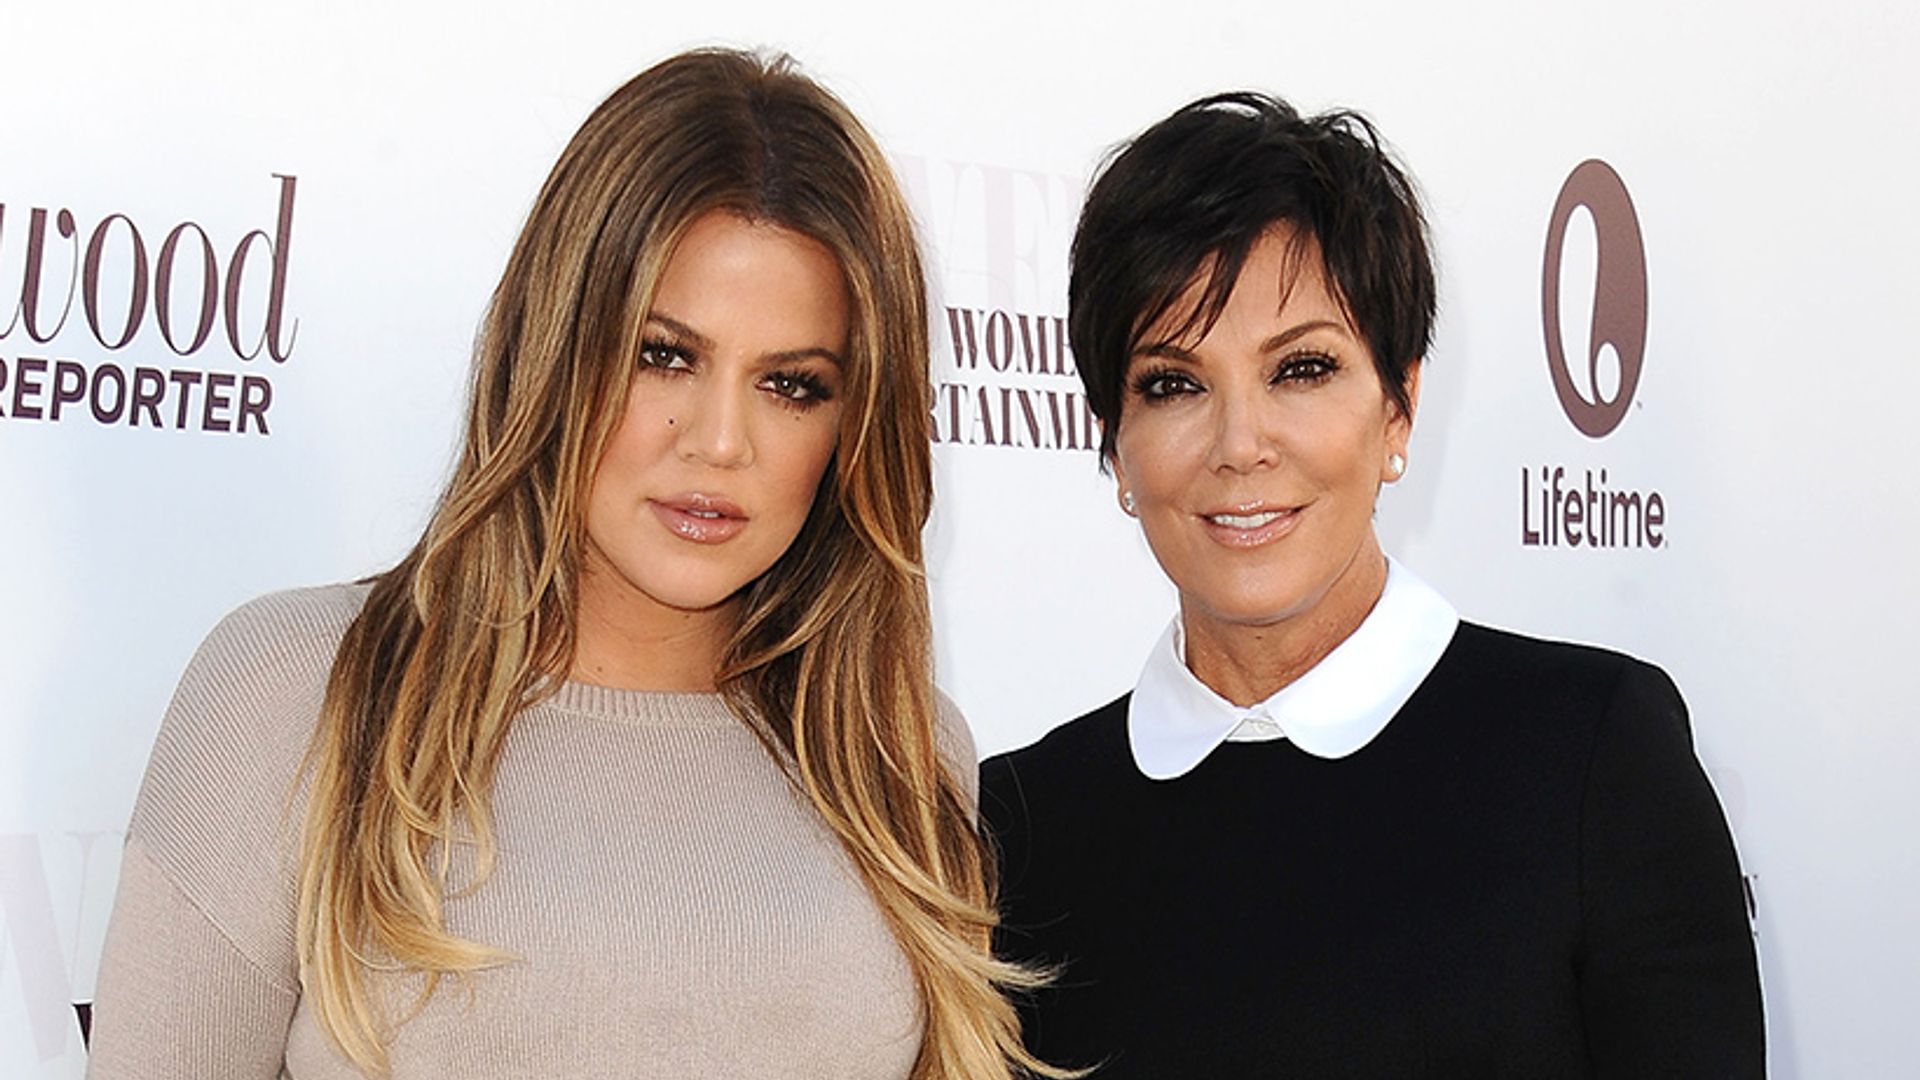 Kris Jenner breaks her silence following birth of Khloe Kardashian's baby